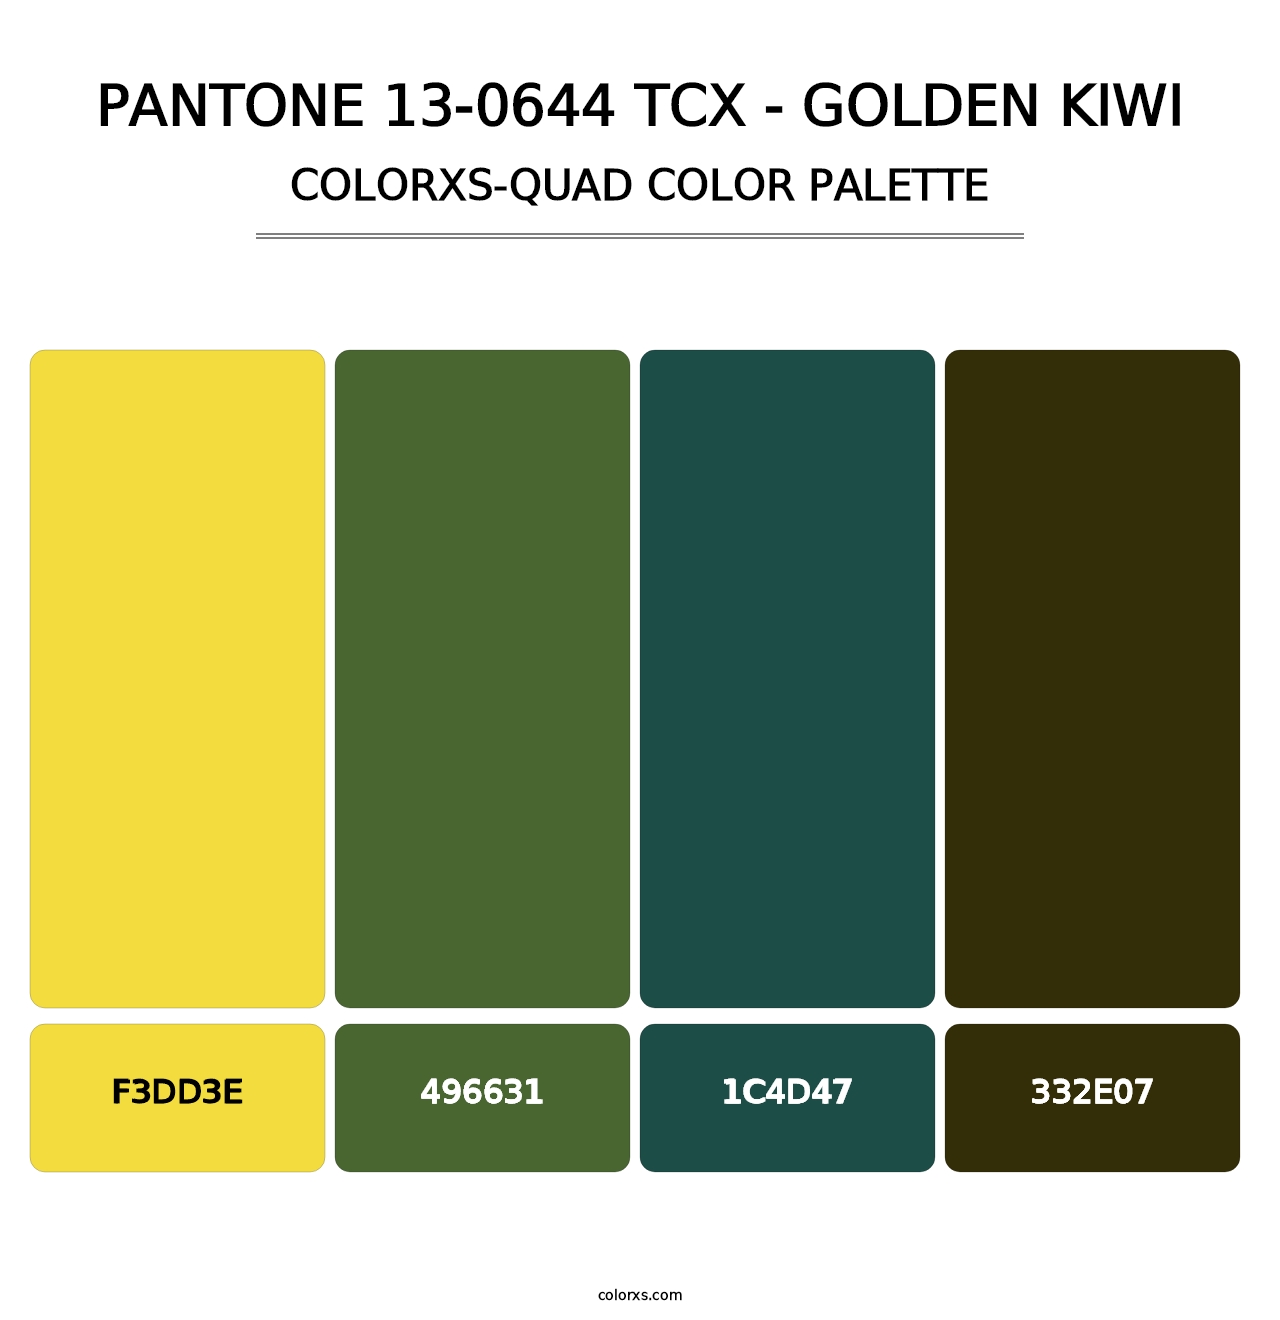 PANTONE 13-0644 TCX - Golden Kiwi - Colorxs Quad Palette